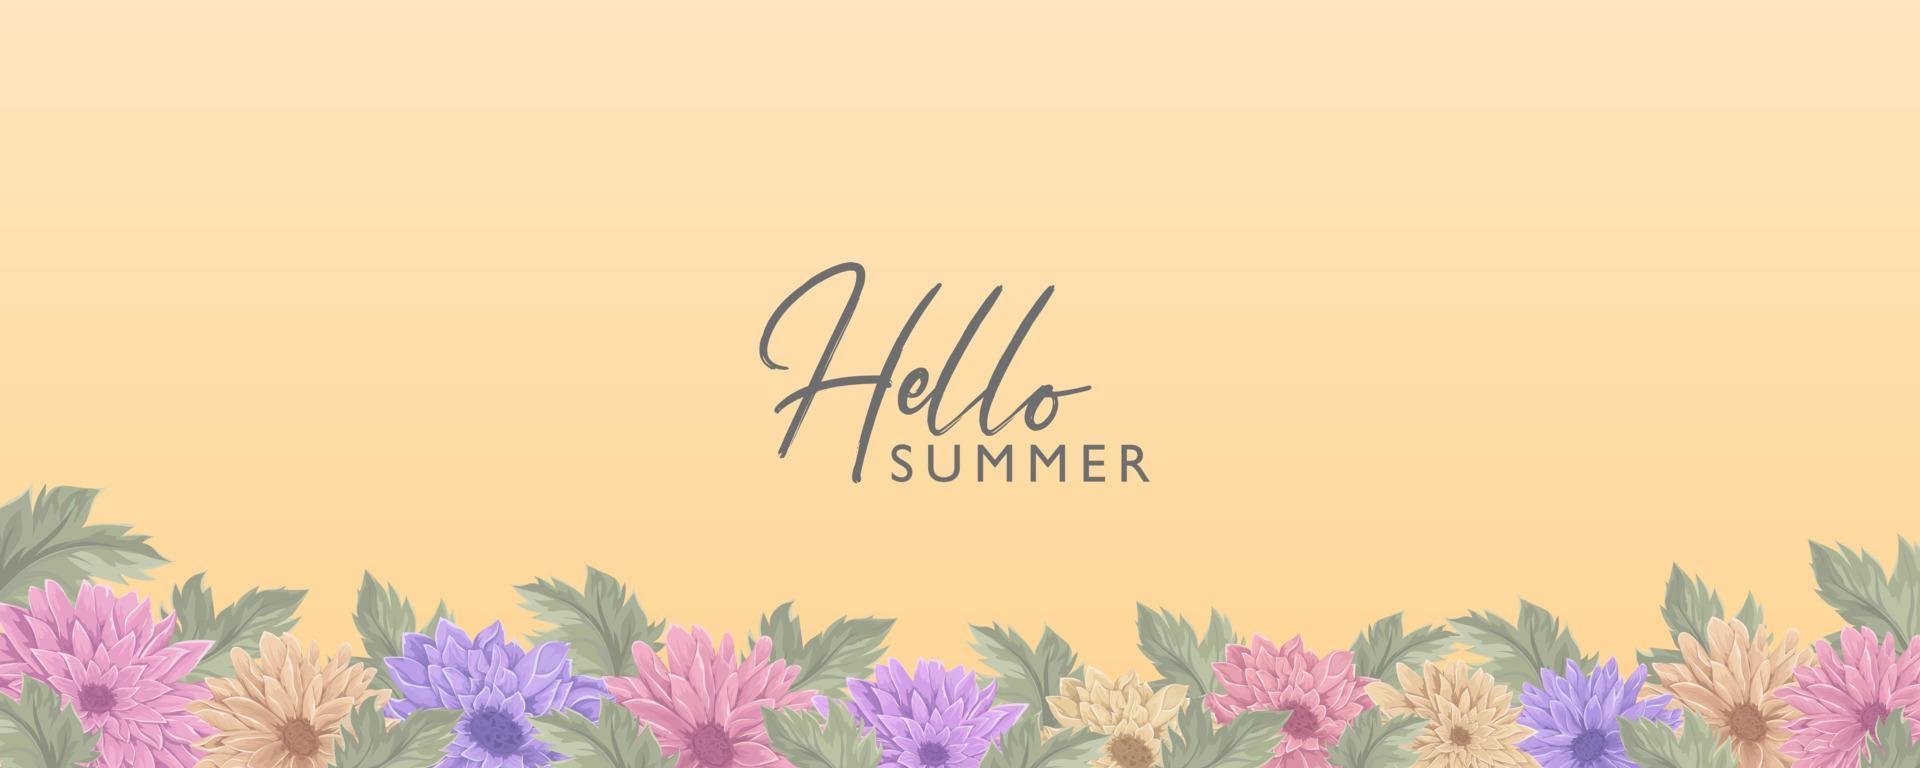 banner floral minimalista con un tema de verano. vector